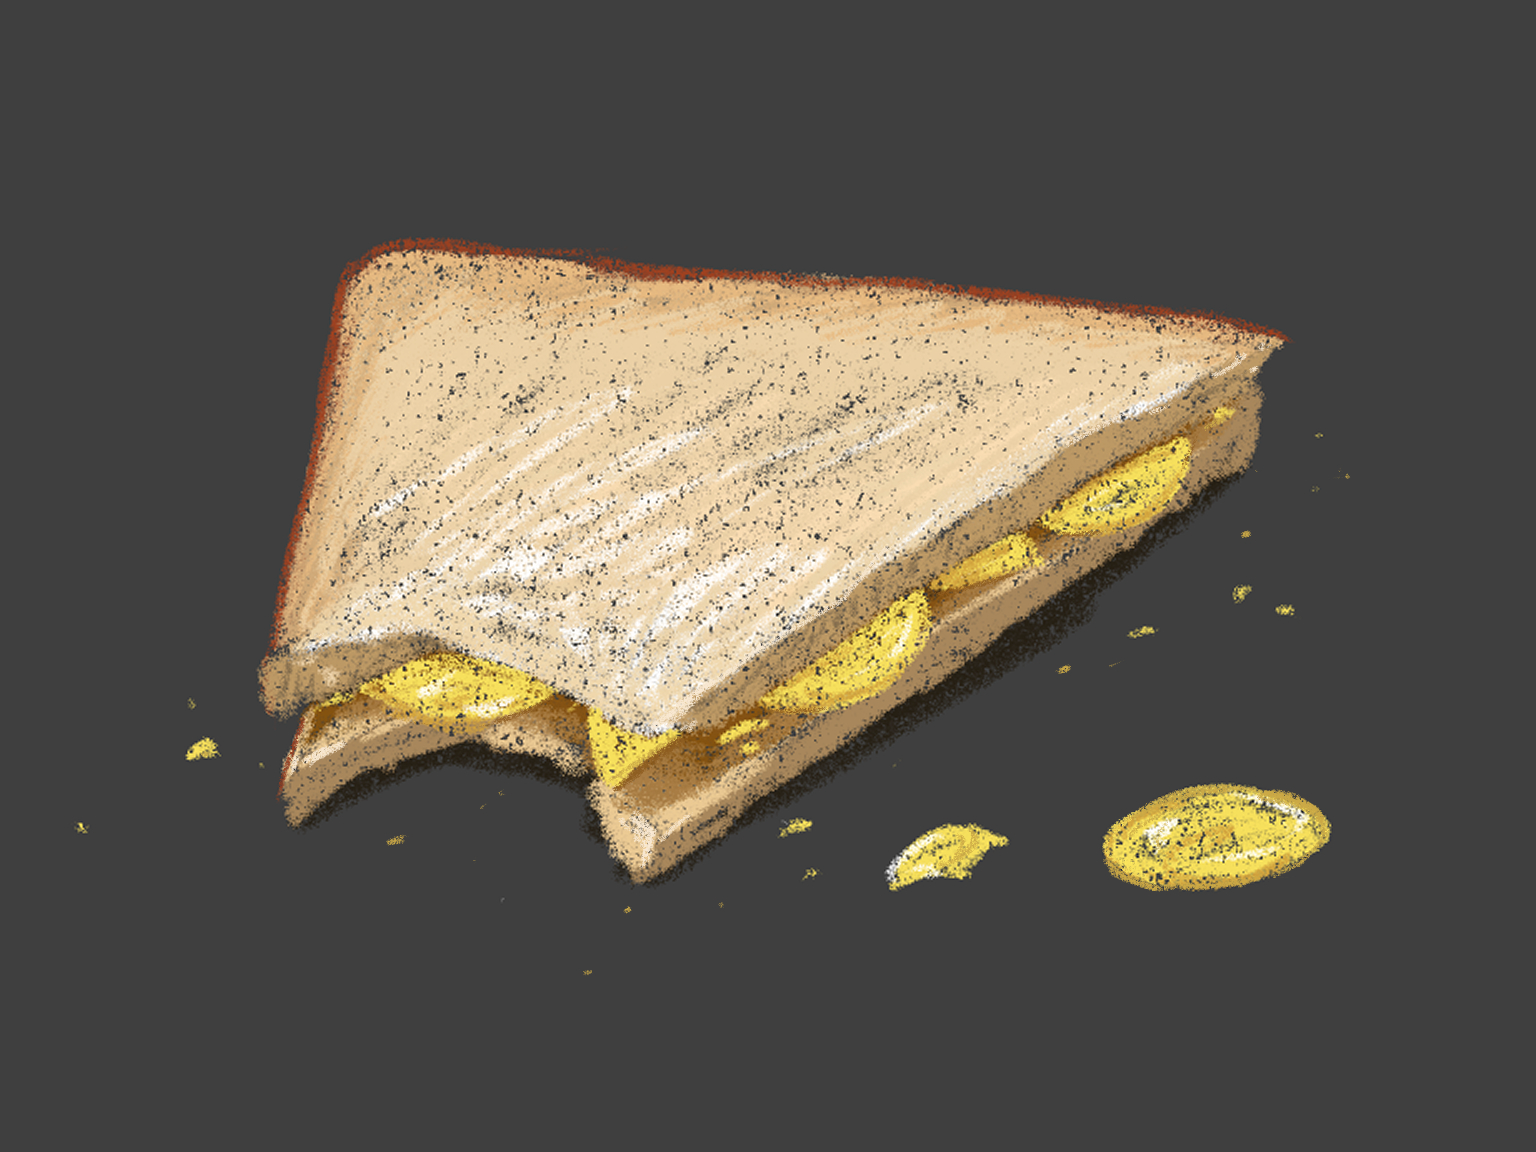 Drawing of a bitten triangular crisp sandwich